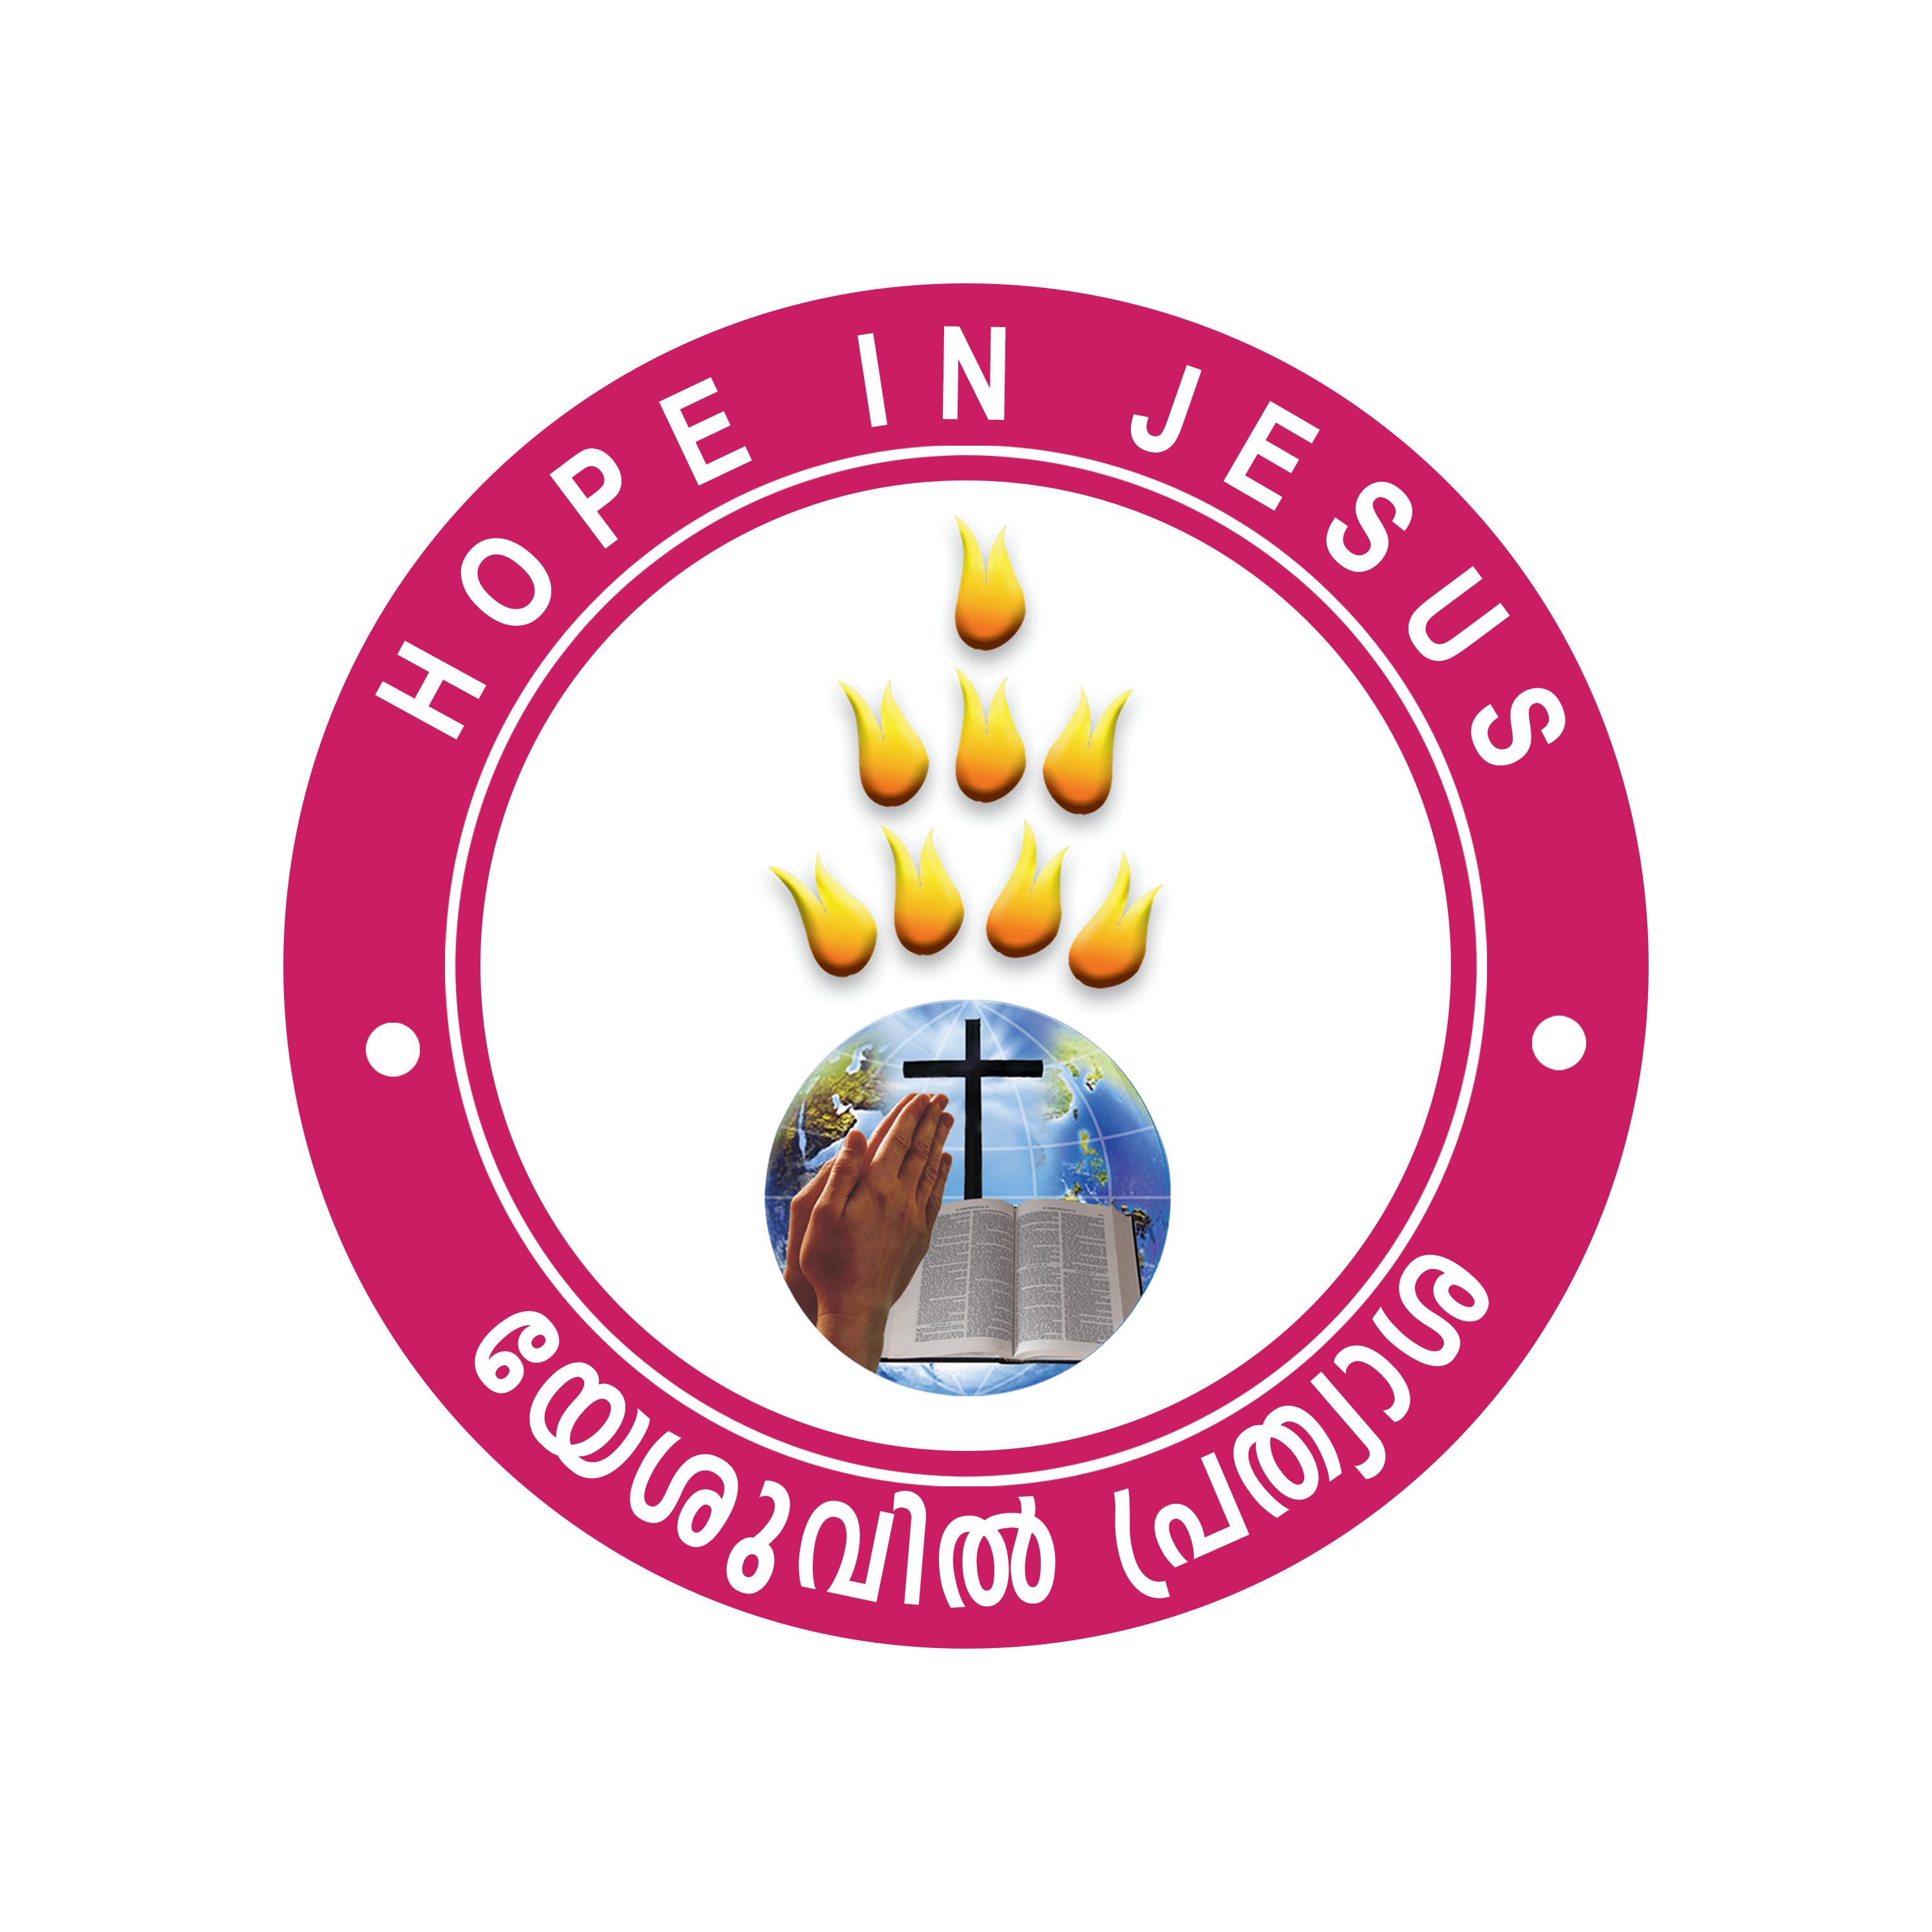 Hope in Jesus Ministries